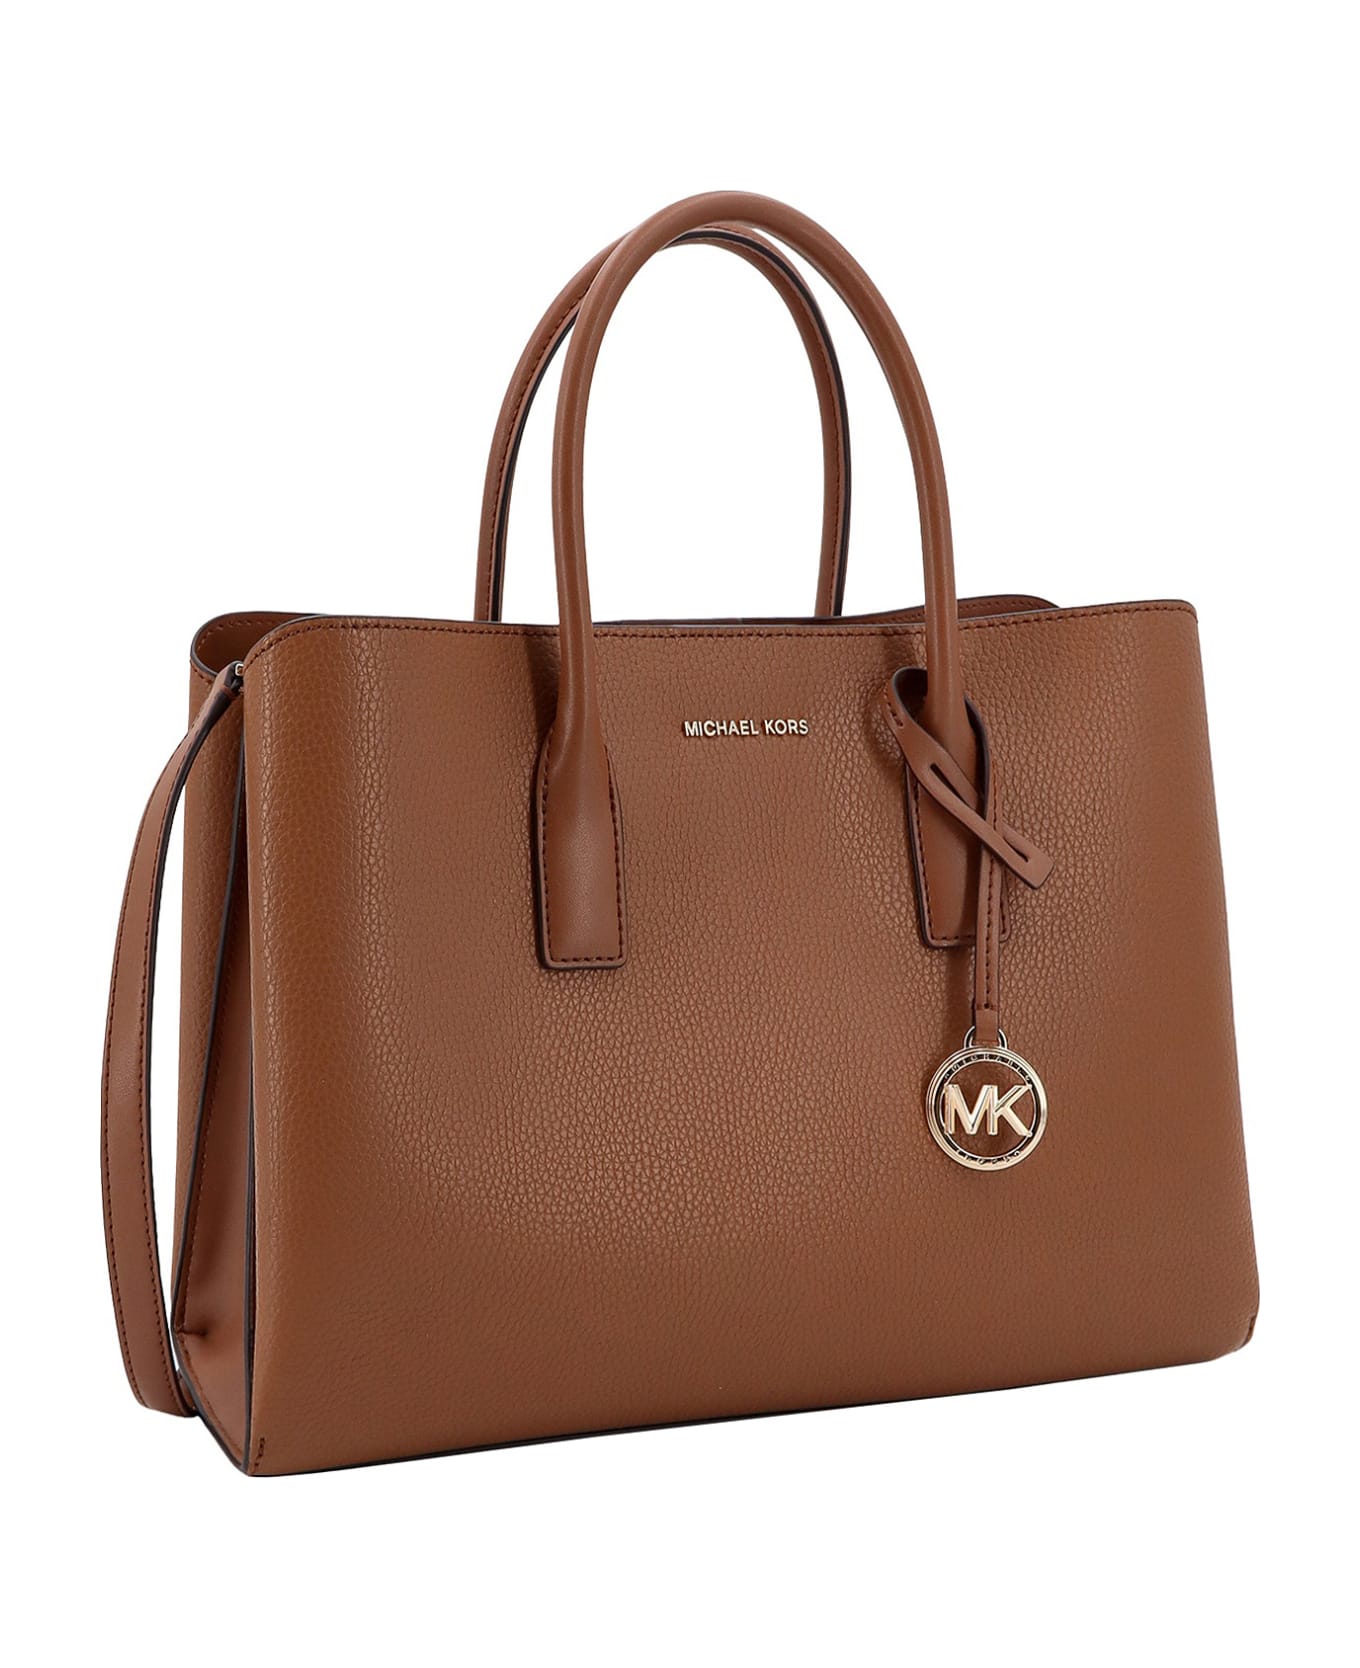 Michael Kors Collection Handbag - Luggage